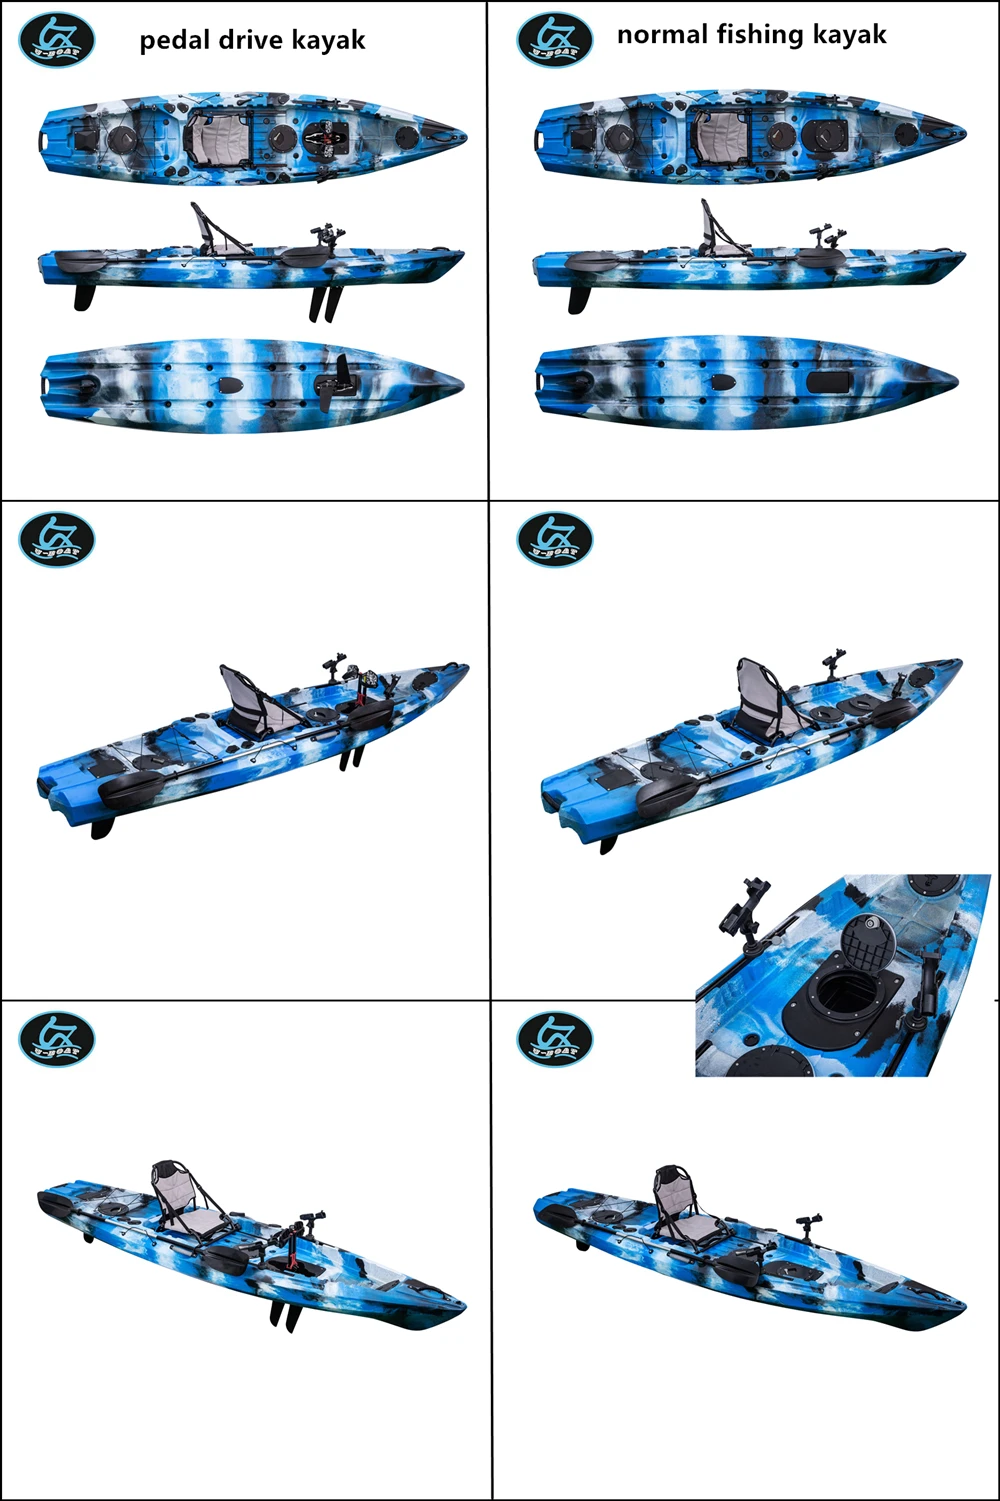 U-Boat 12ft pedal drive kayak normal